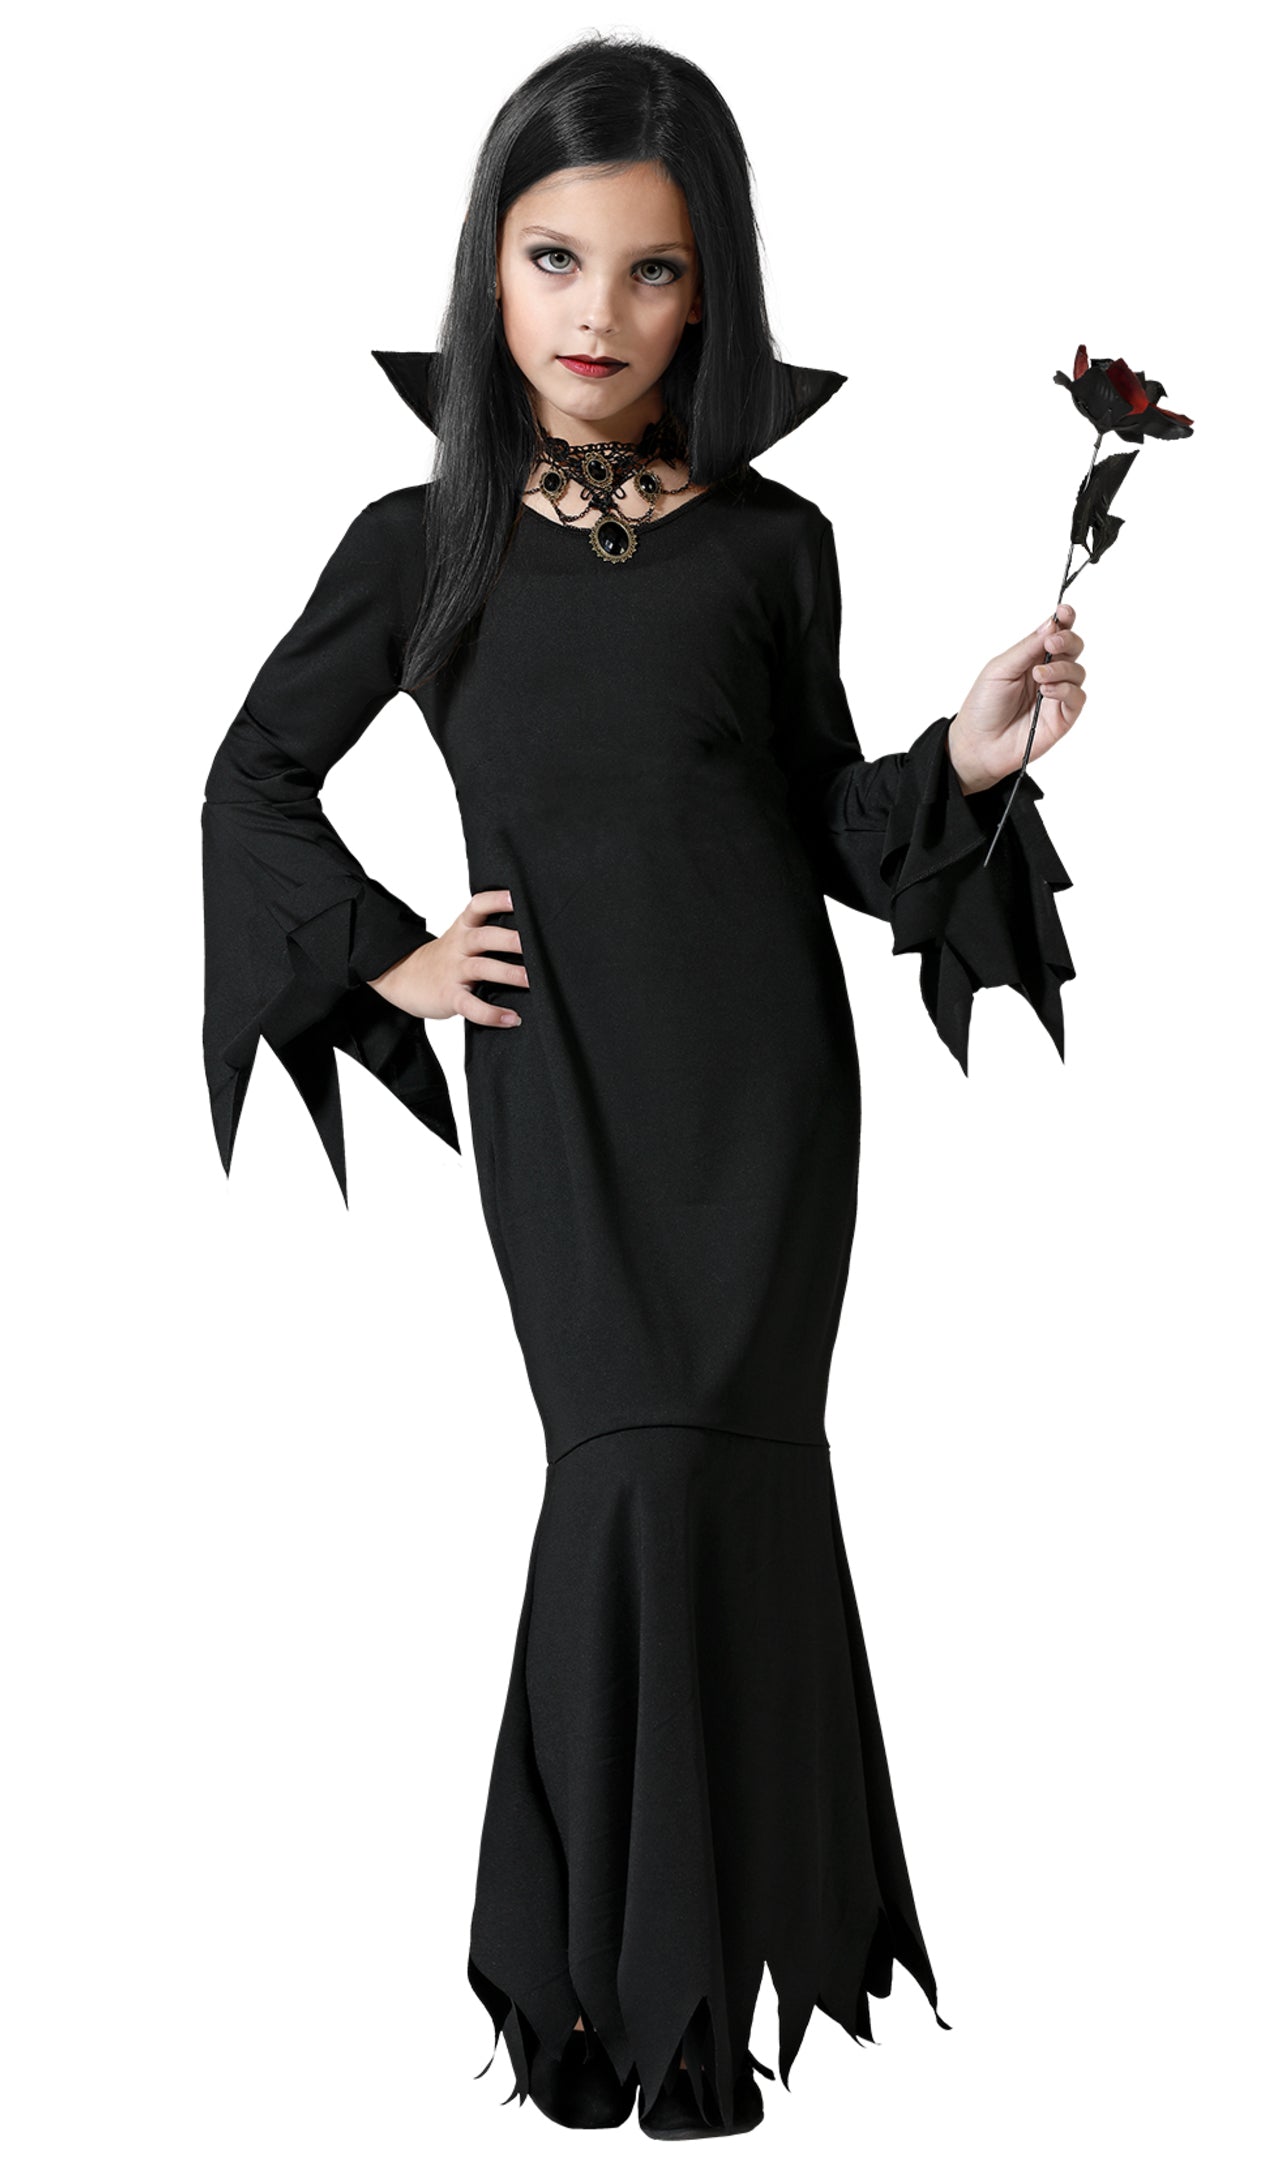 Costume Mortisia Famiglia Addams: Acquista Online il Tuo Look da Halloween